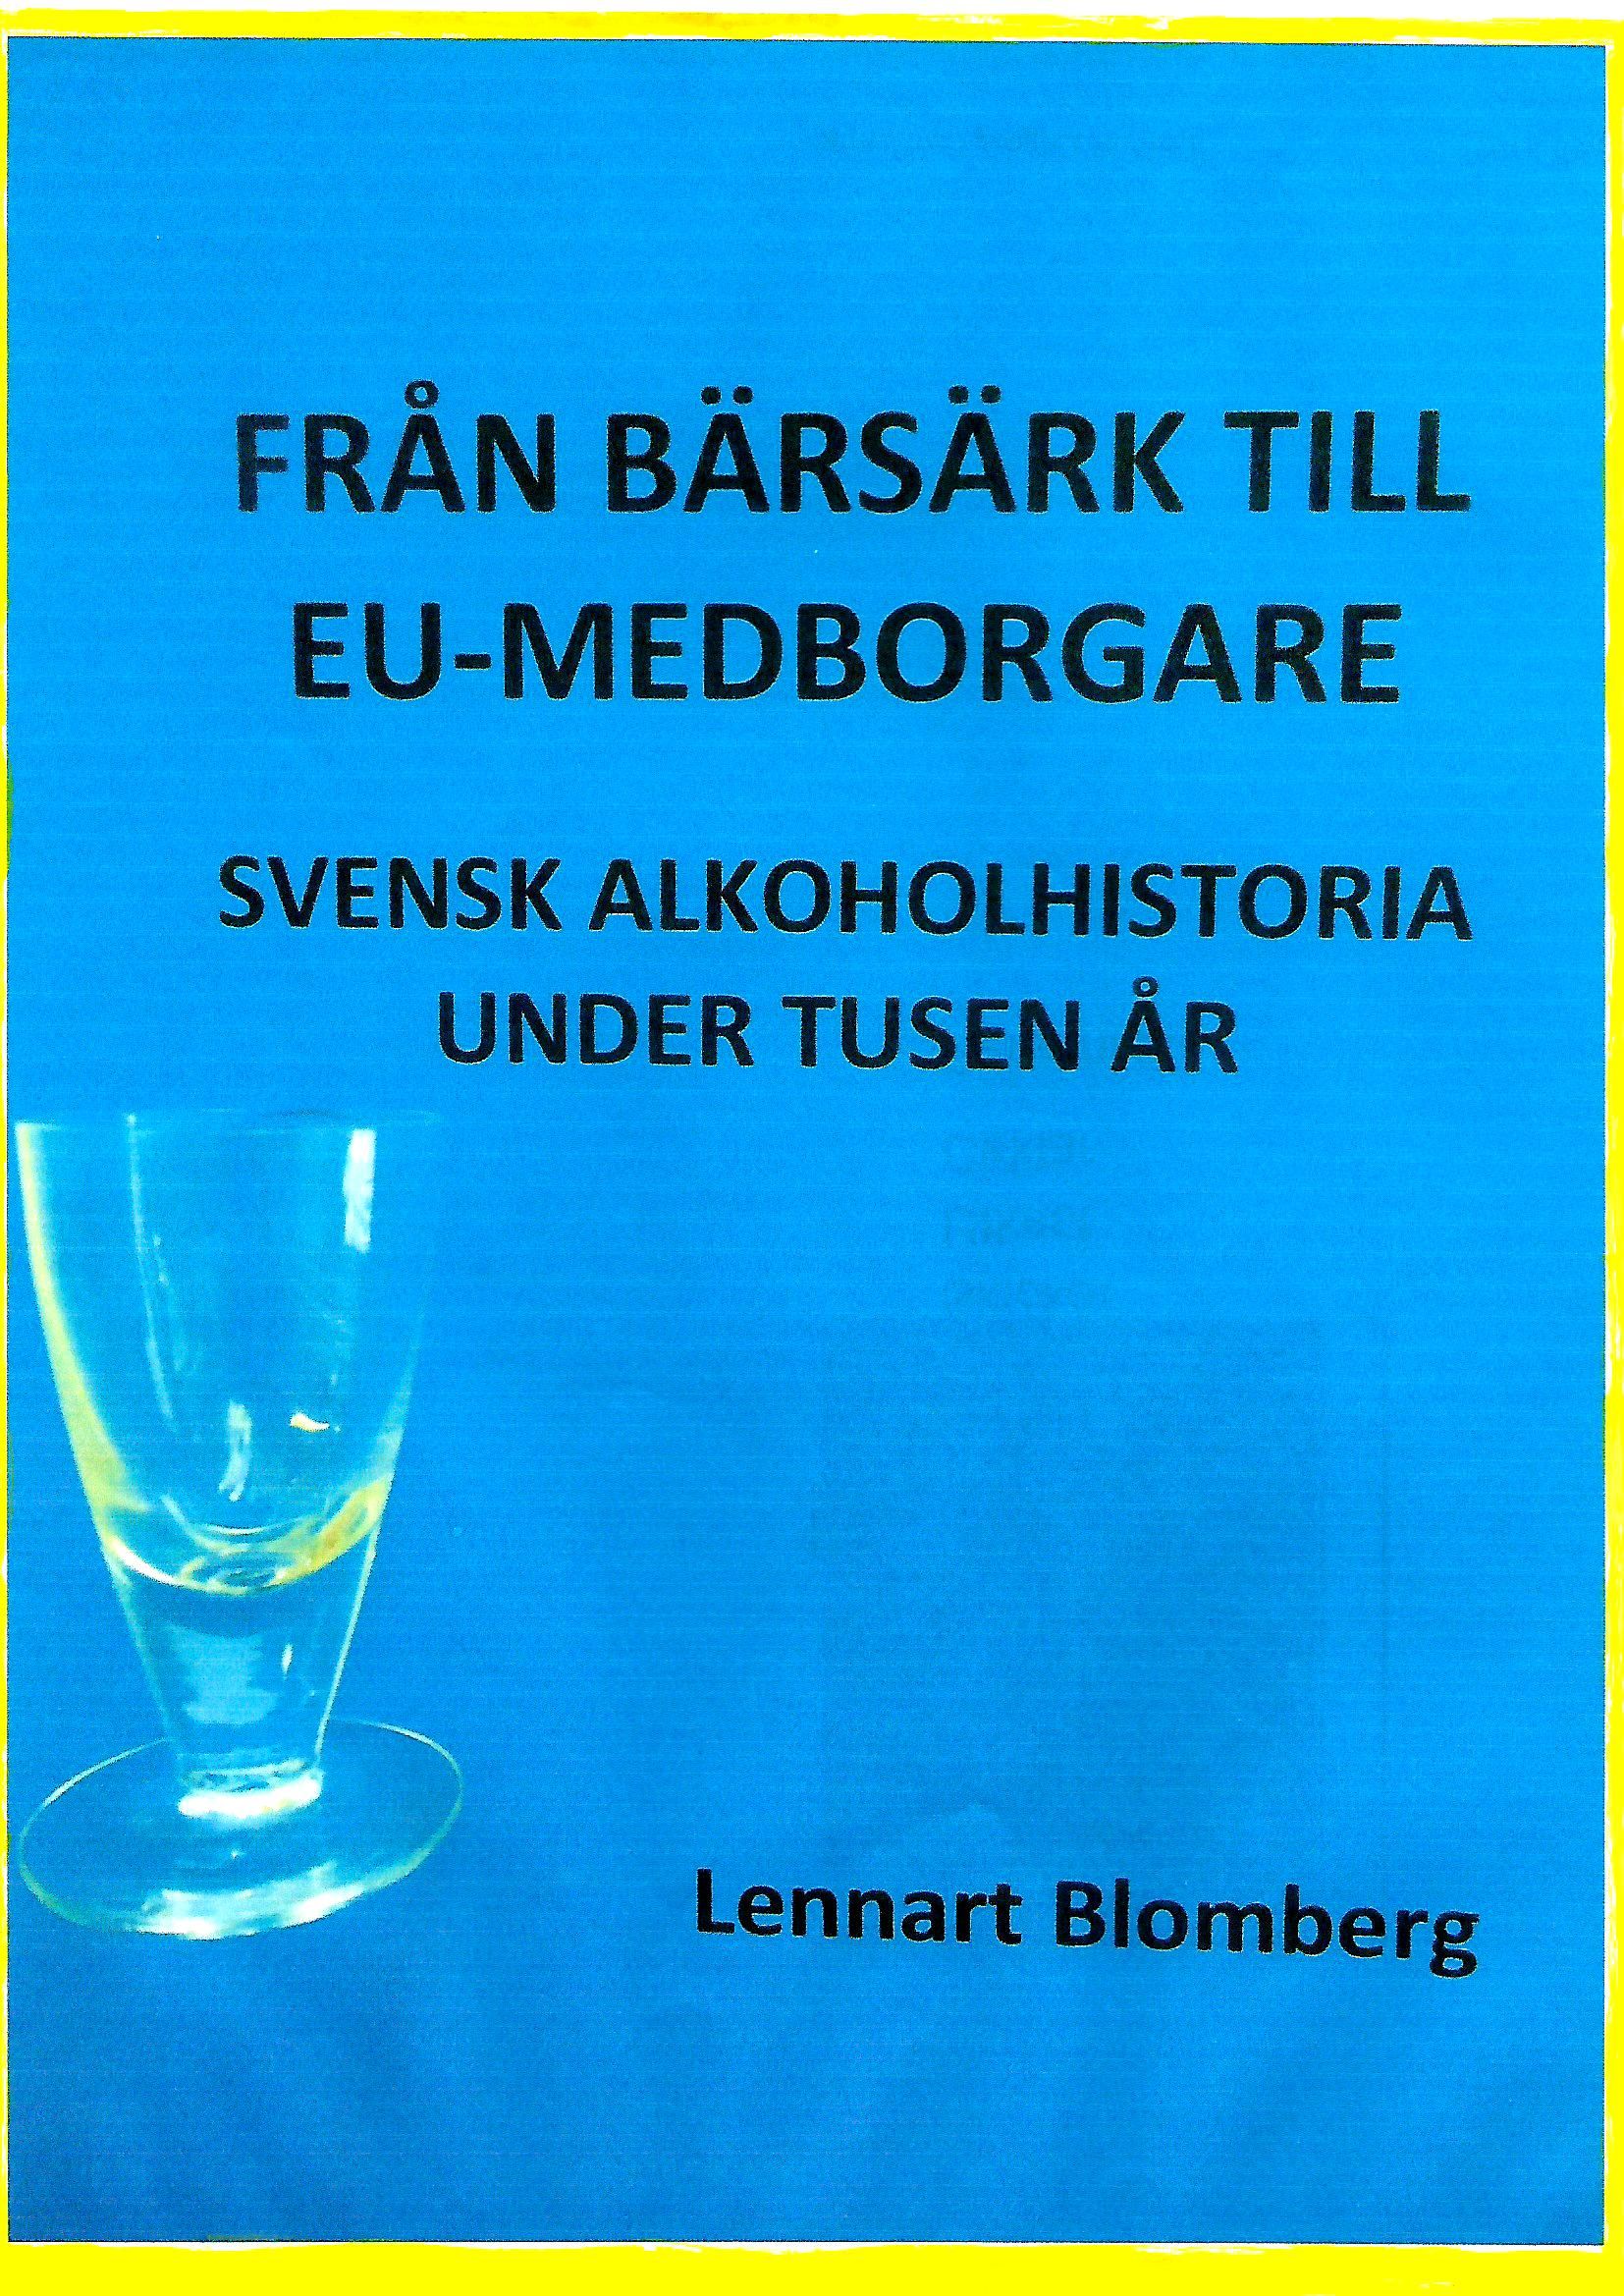 Från bärsärk till EU-medborgare, e-bok av Lennart Blomberg